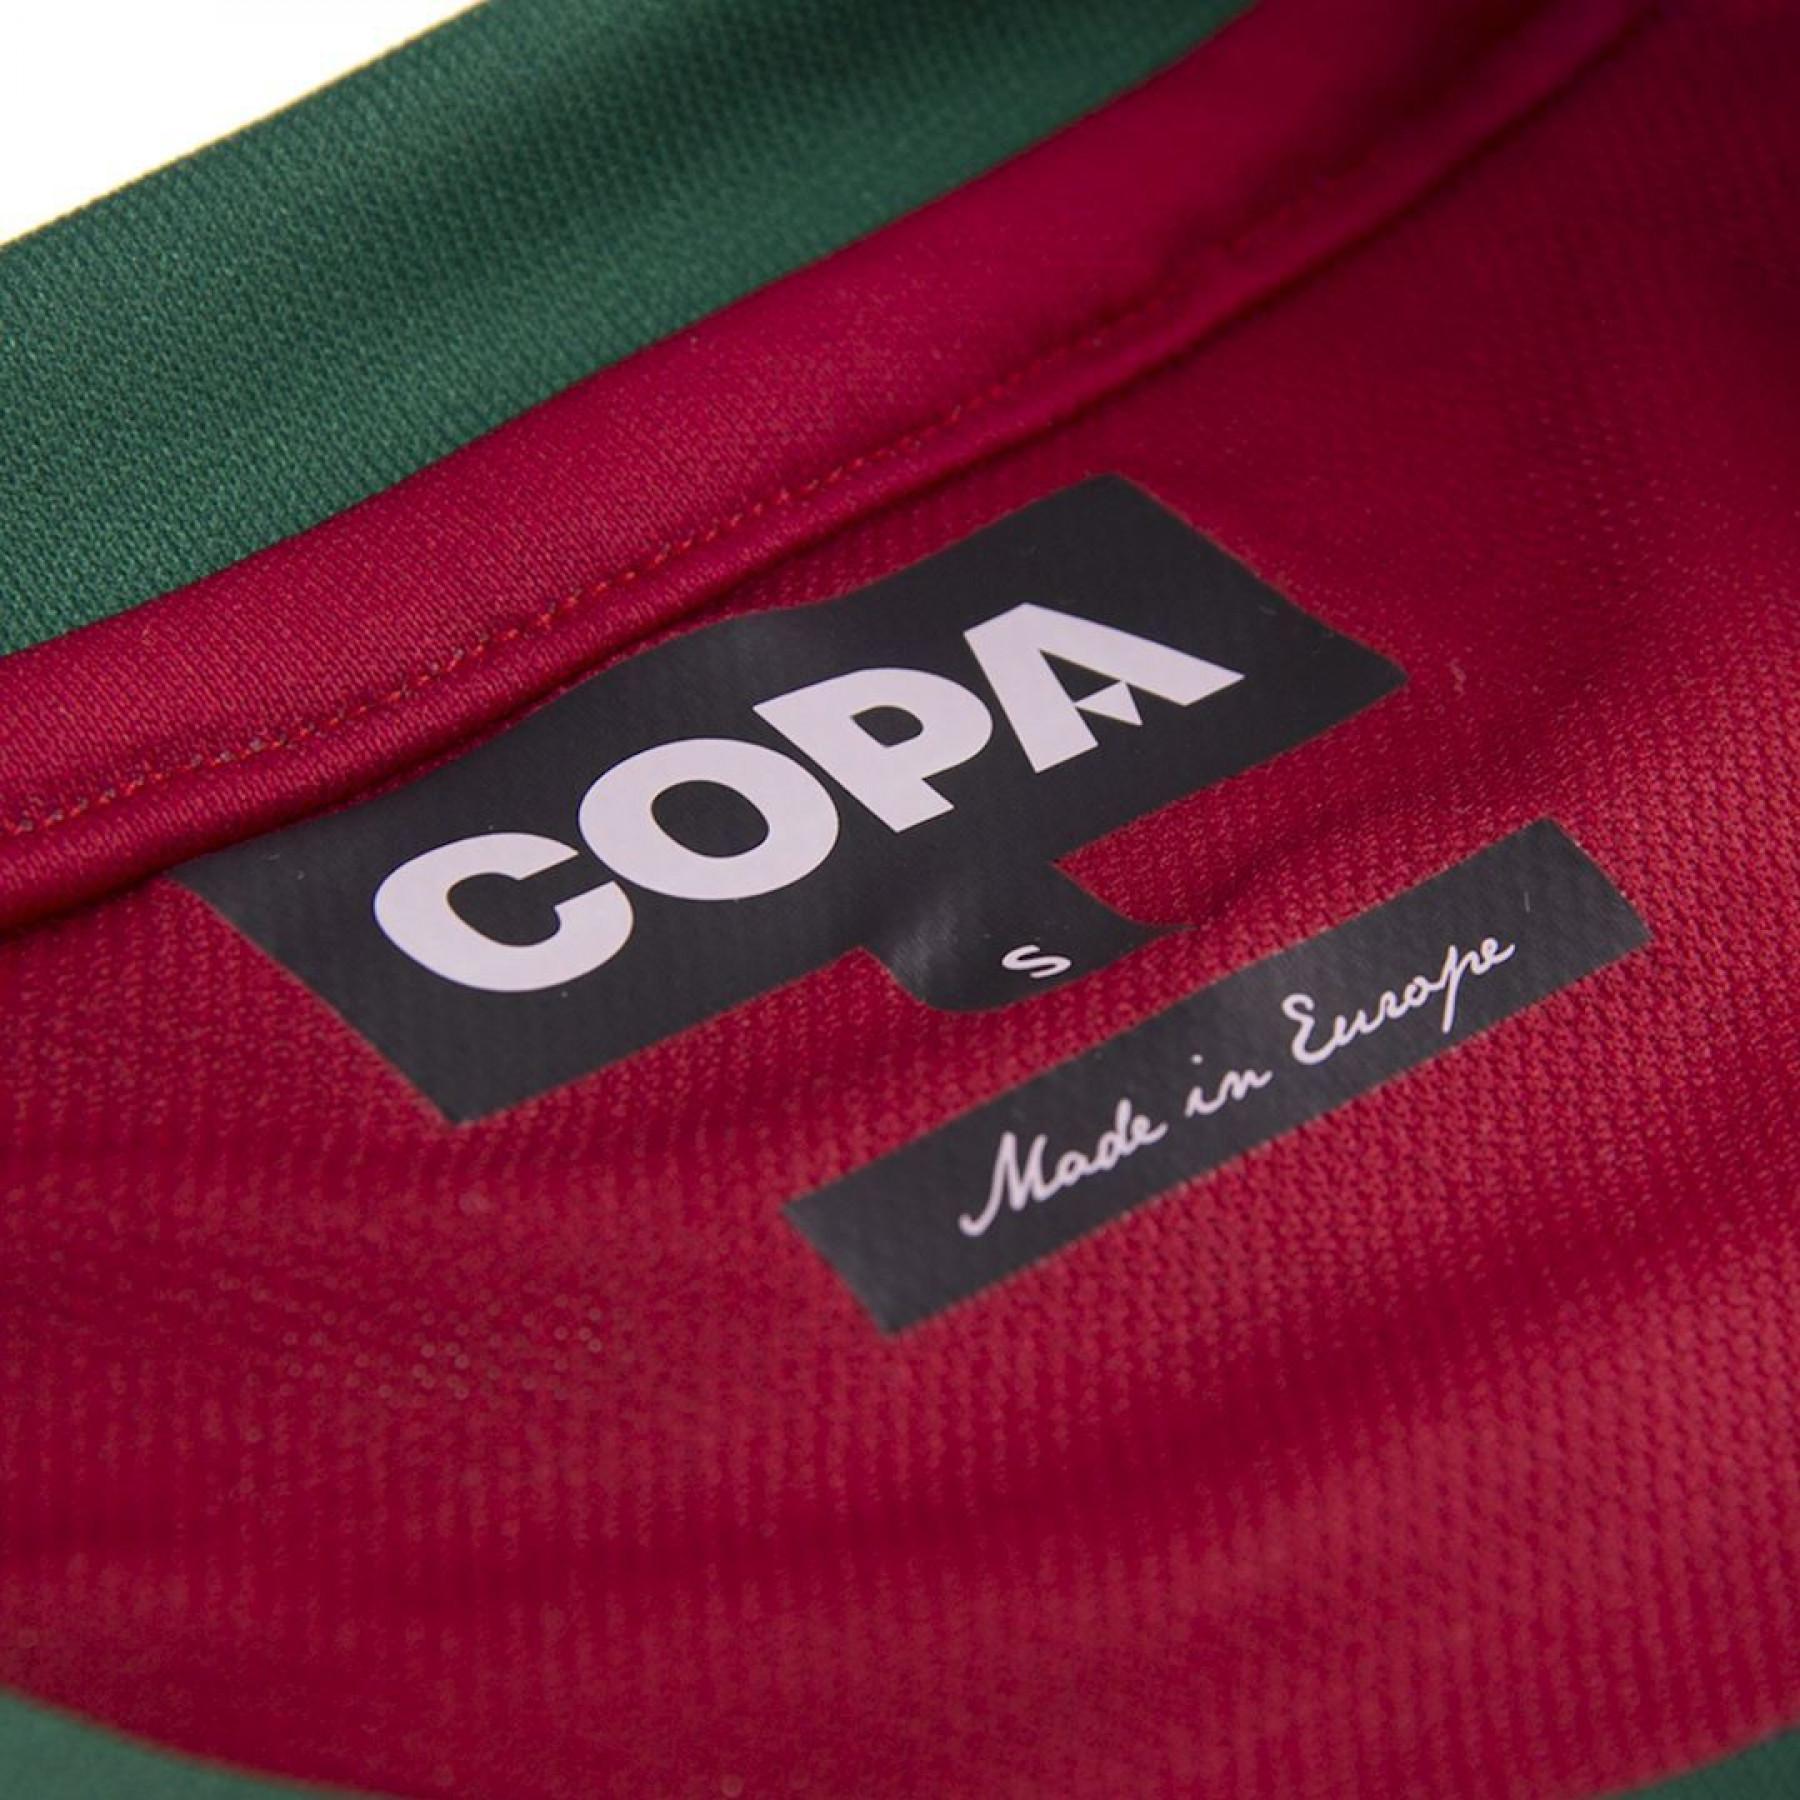 Camiseta Copa Portugal